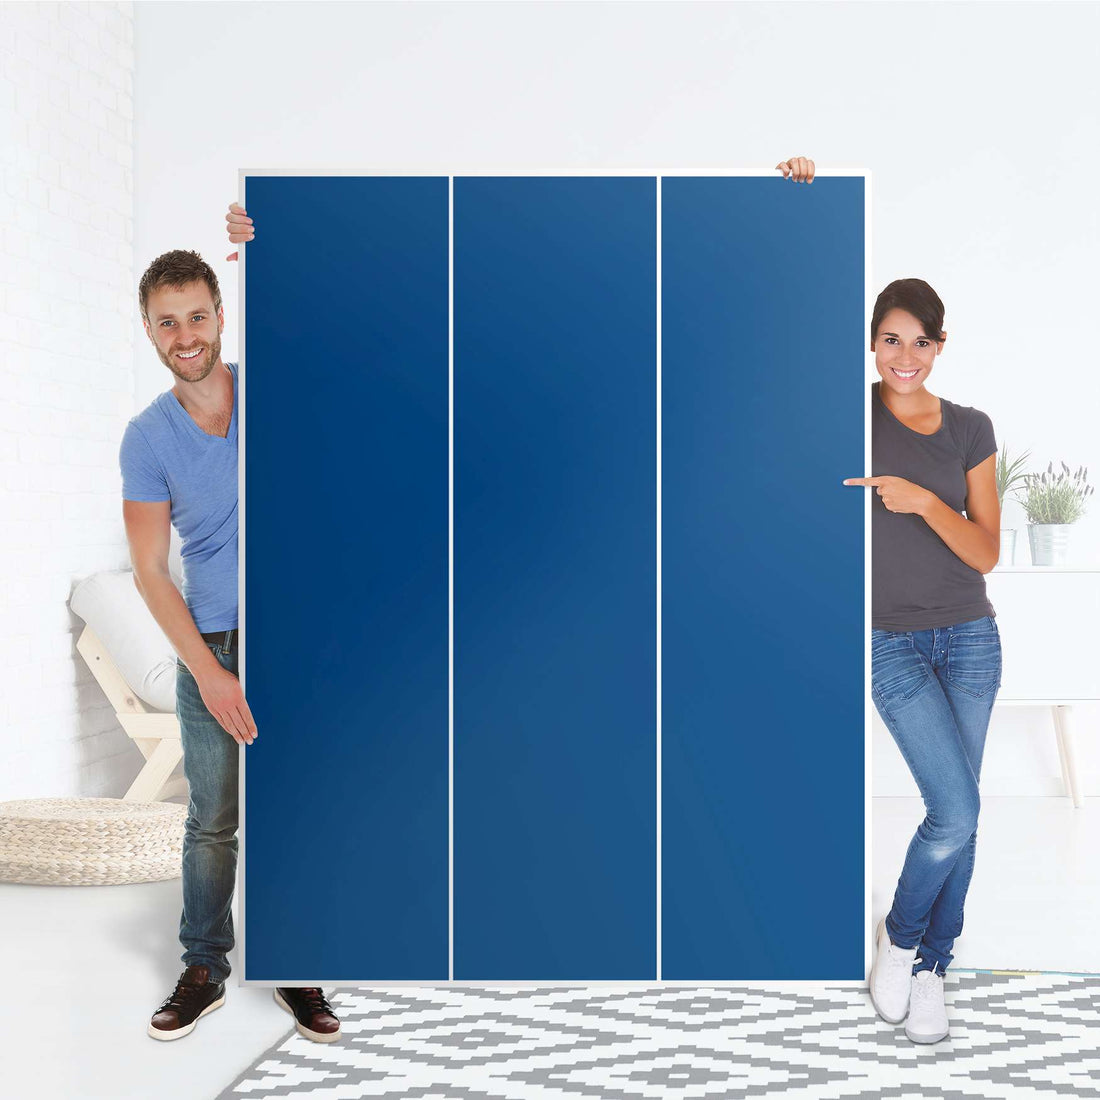 Folie für Möbel Blau Dark - IKEA Pax Schrank 201 cm Höhe - 3 Türen - Folie